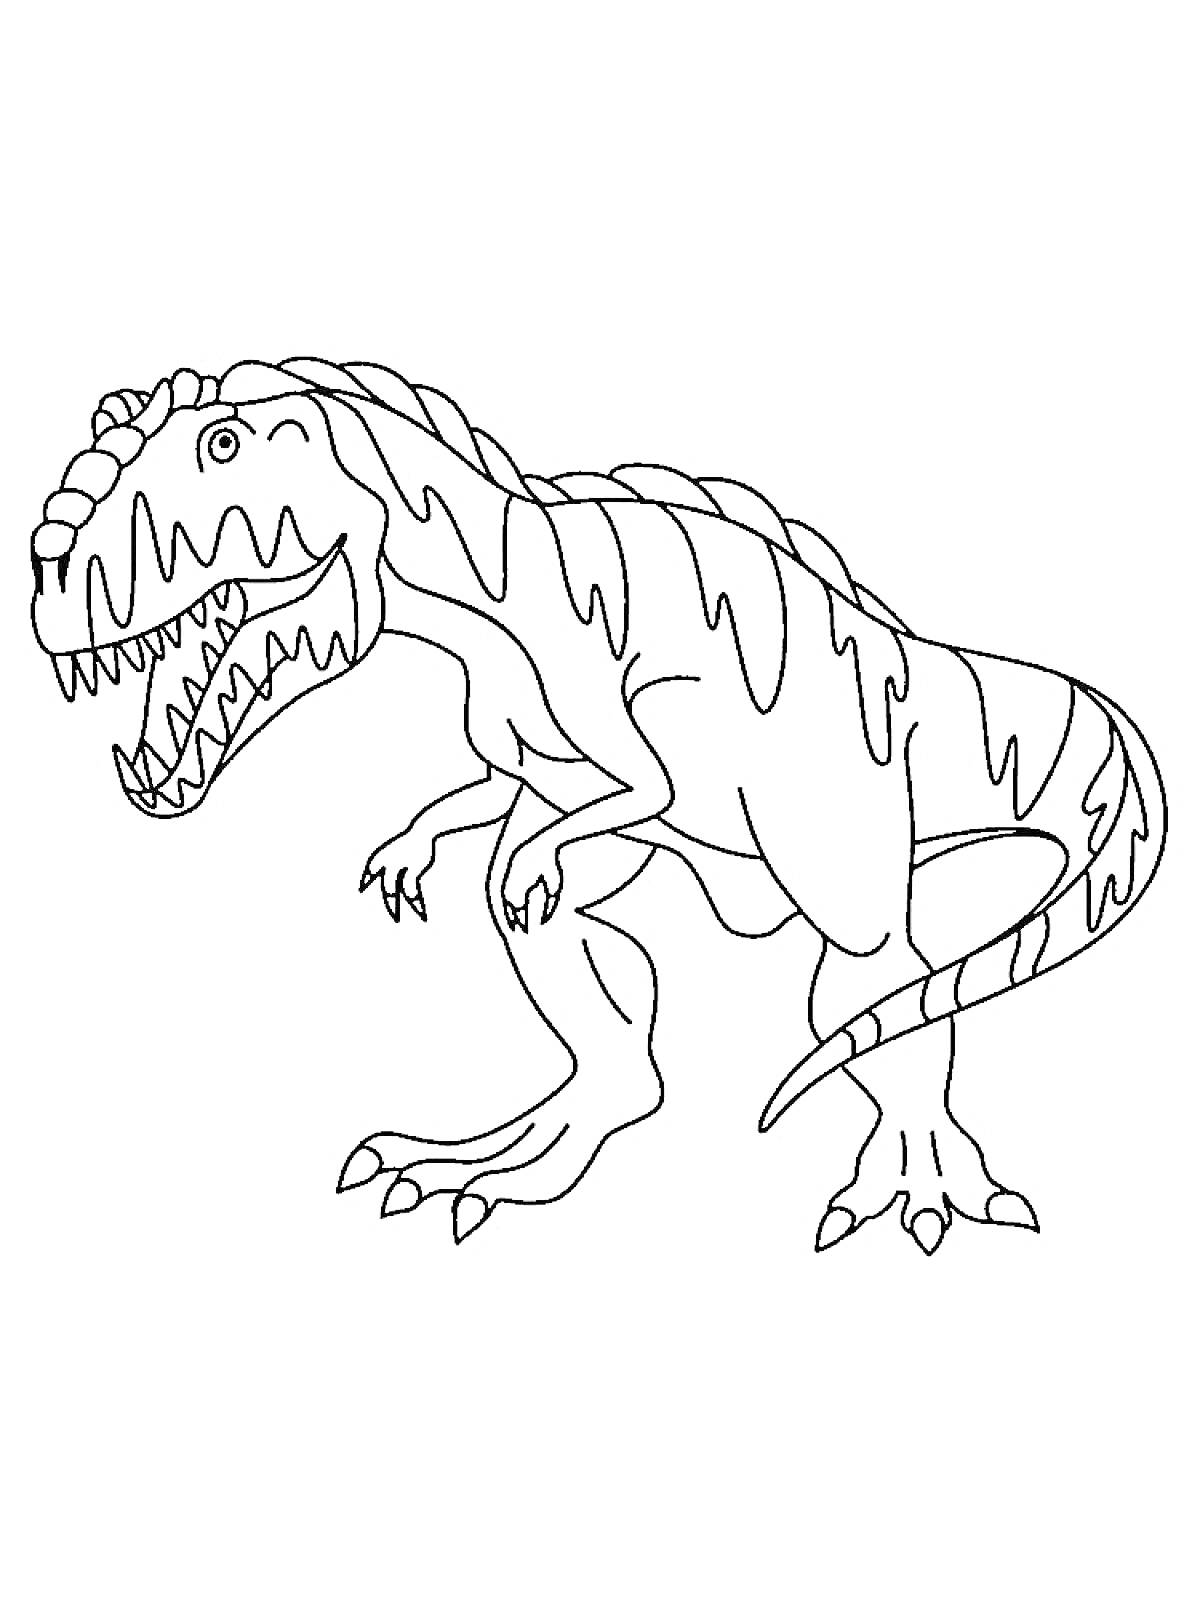 Тираннозавр с открытой пастью и полосатыми узорами на теле